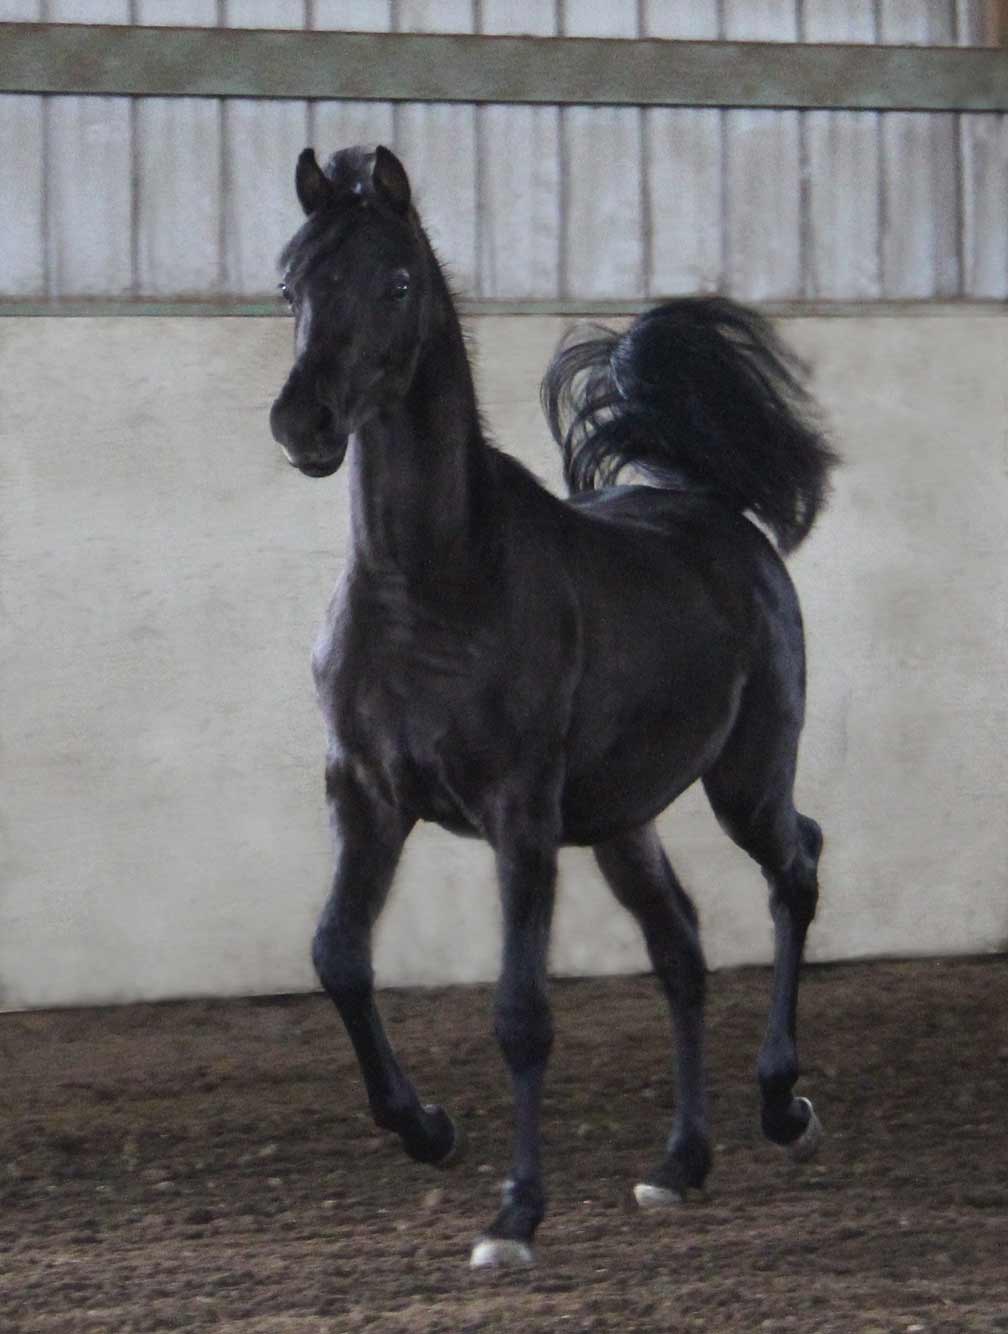 Black colt by Montenegro BP